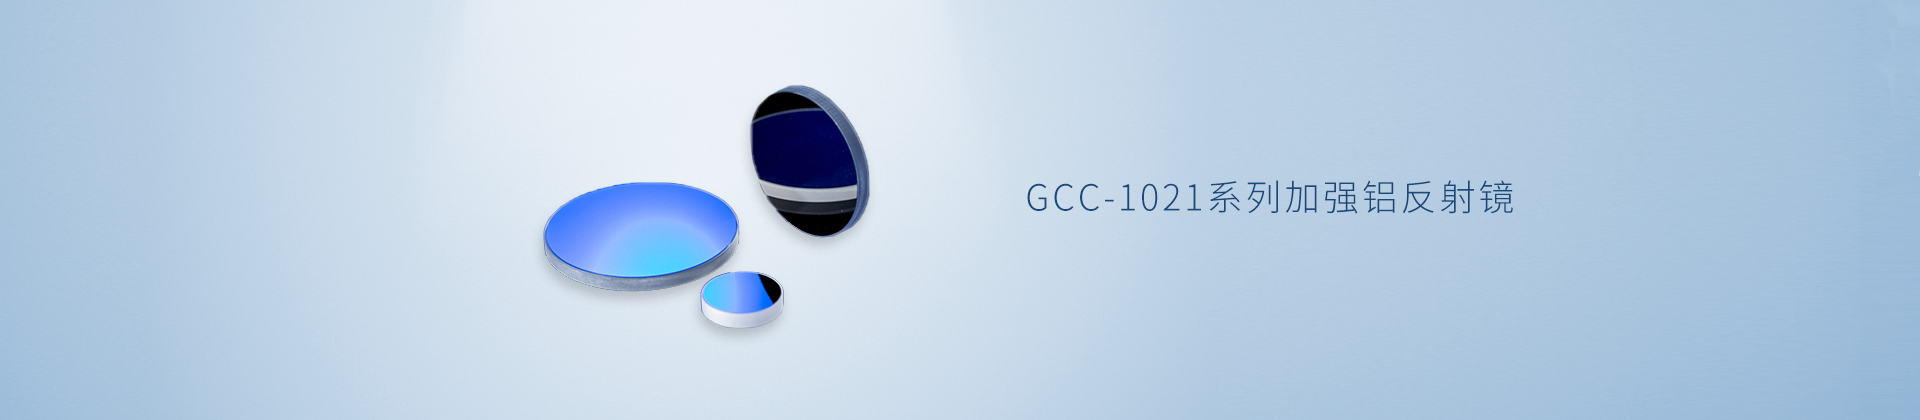 GCC-1021系列加强铝反射镜